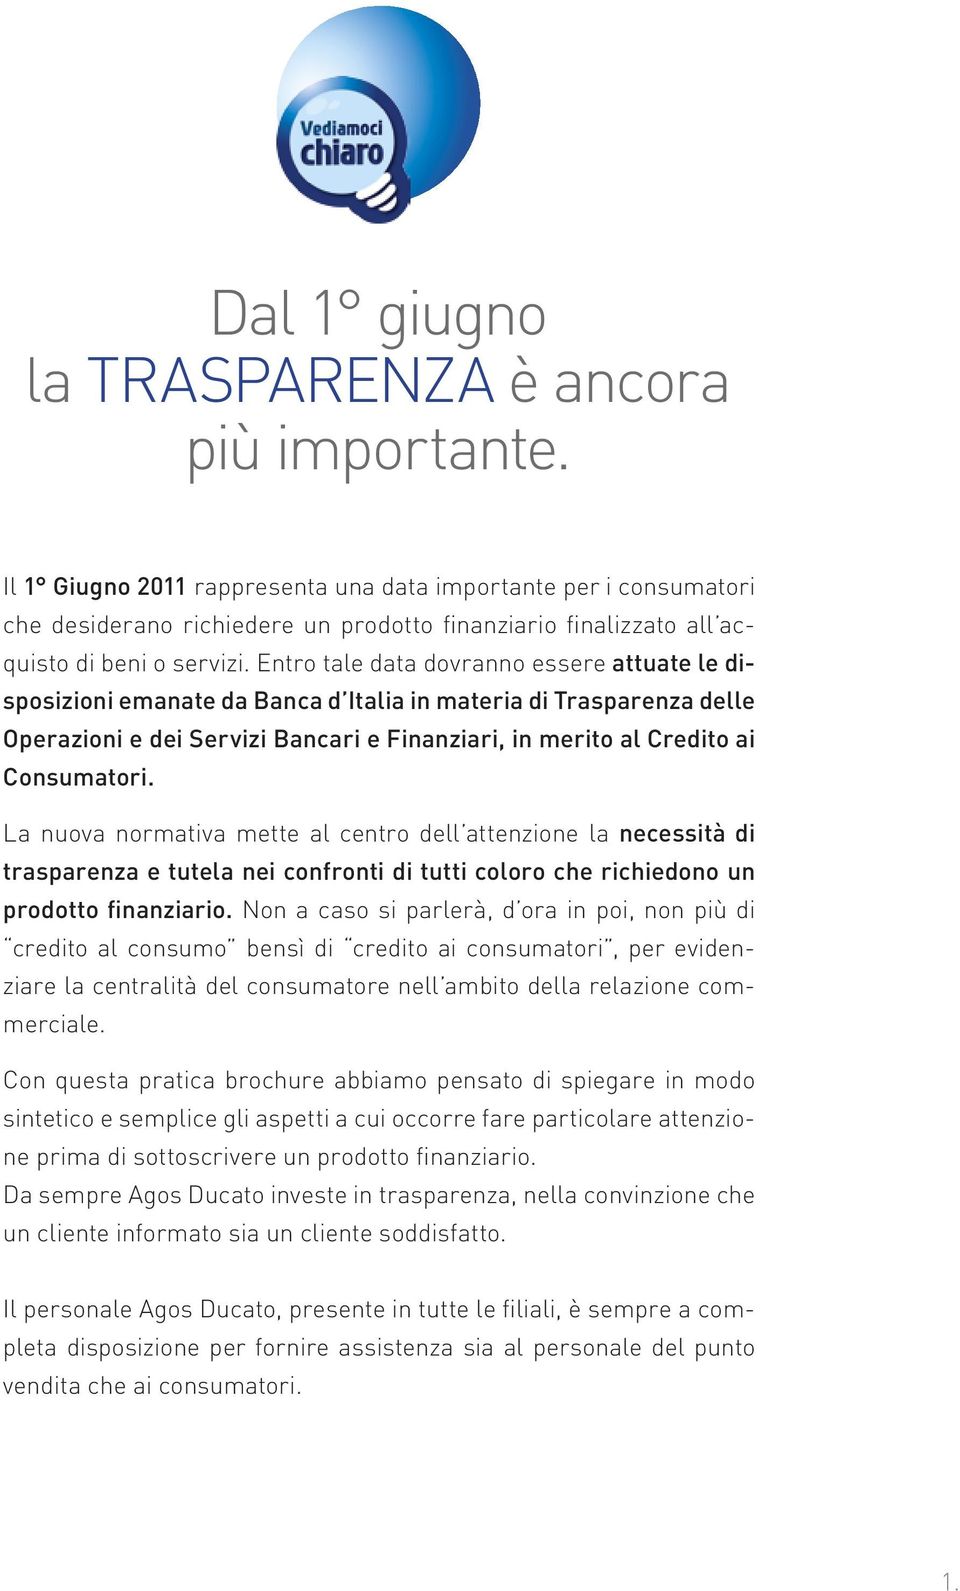 Entro tale data dovranno essere attuate le disposizioni emanate da Banca d Italia in materia di Trasparenza delle Operazioni e dei Servizi Bancari e Finanziari, in merito al Credito ai Consumatori.